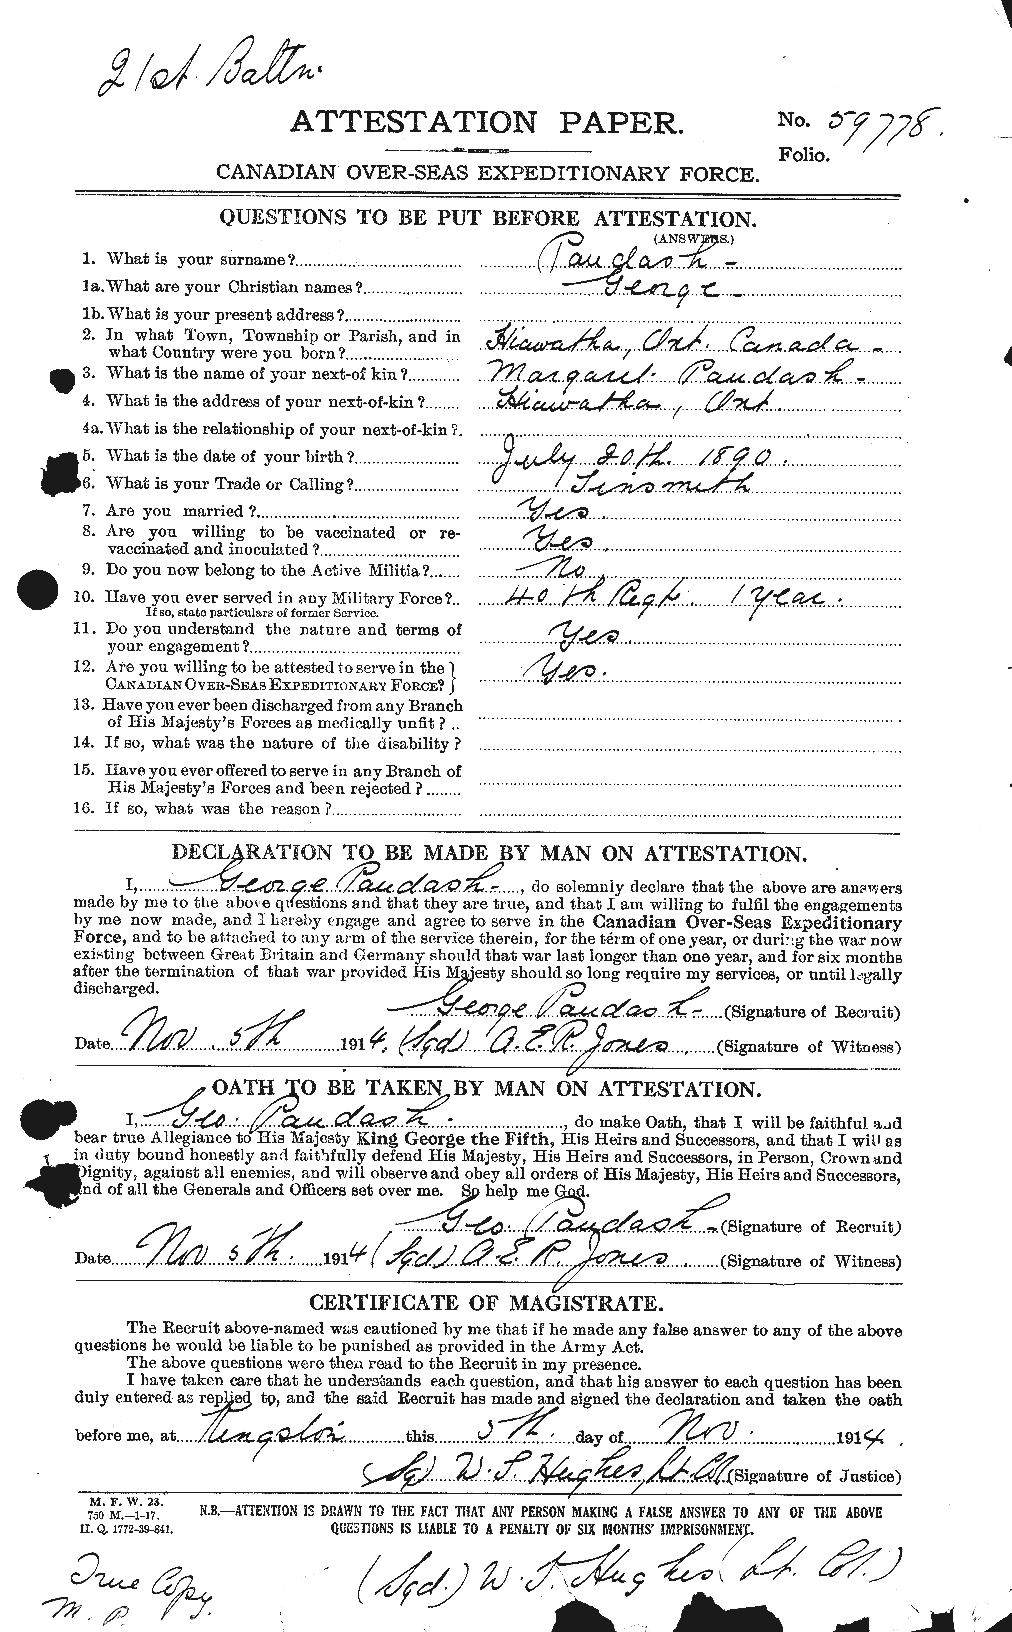 Dossiers du Personnel de la Première Guerre mondiale - CEC 569120a